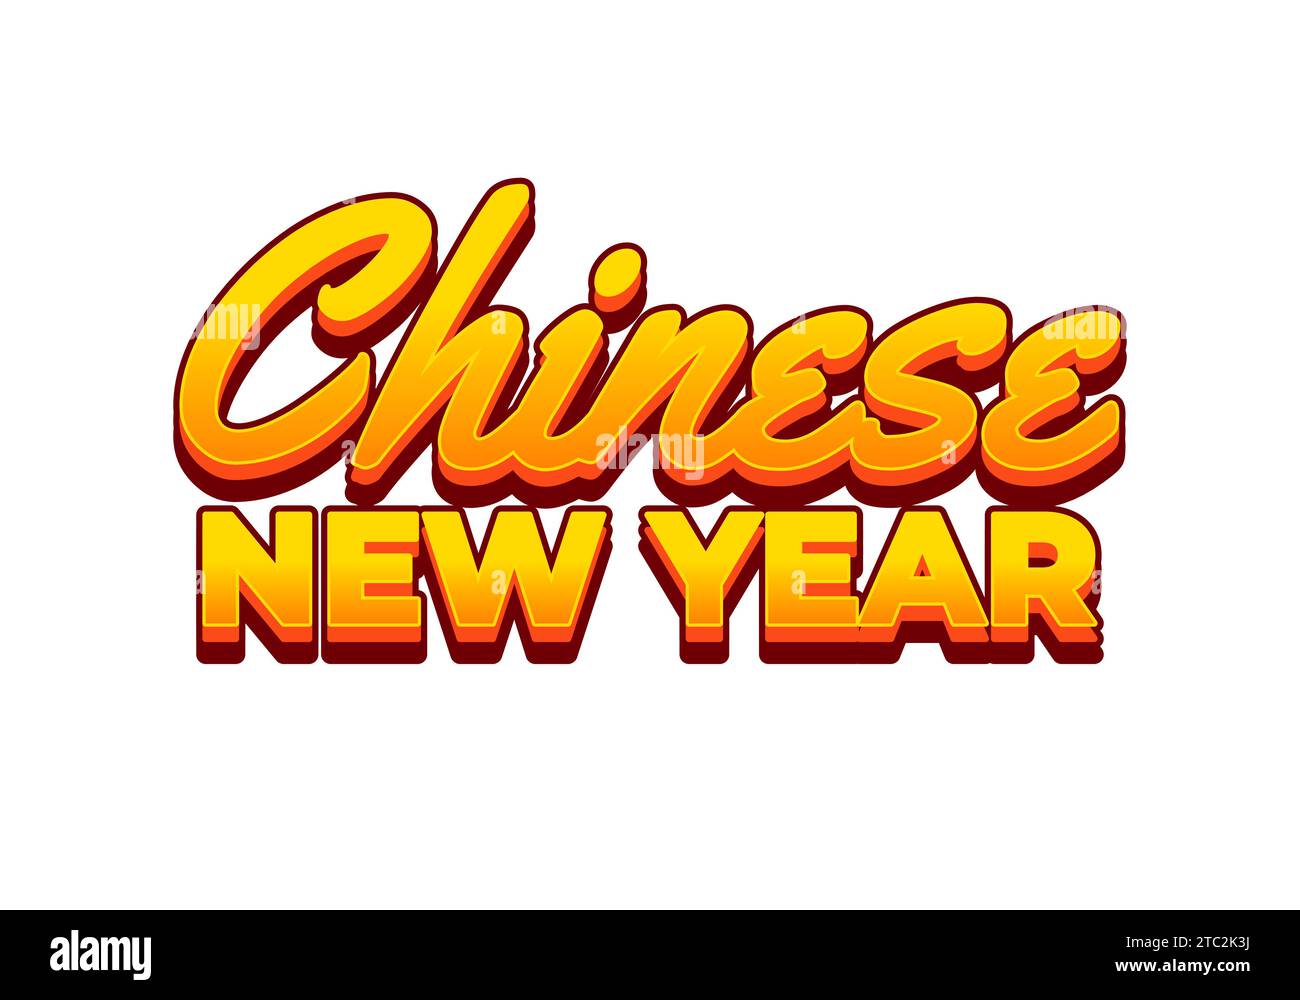 Chinesisches Neujahr. Texteffekt-Design im 3D-Look. Gelbe Farbe Stock Vektor